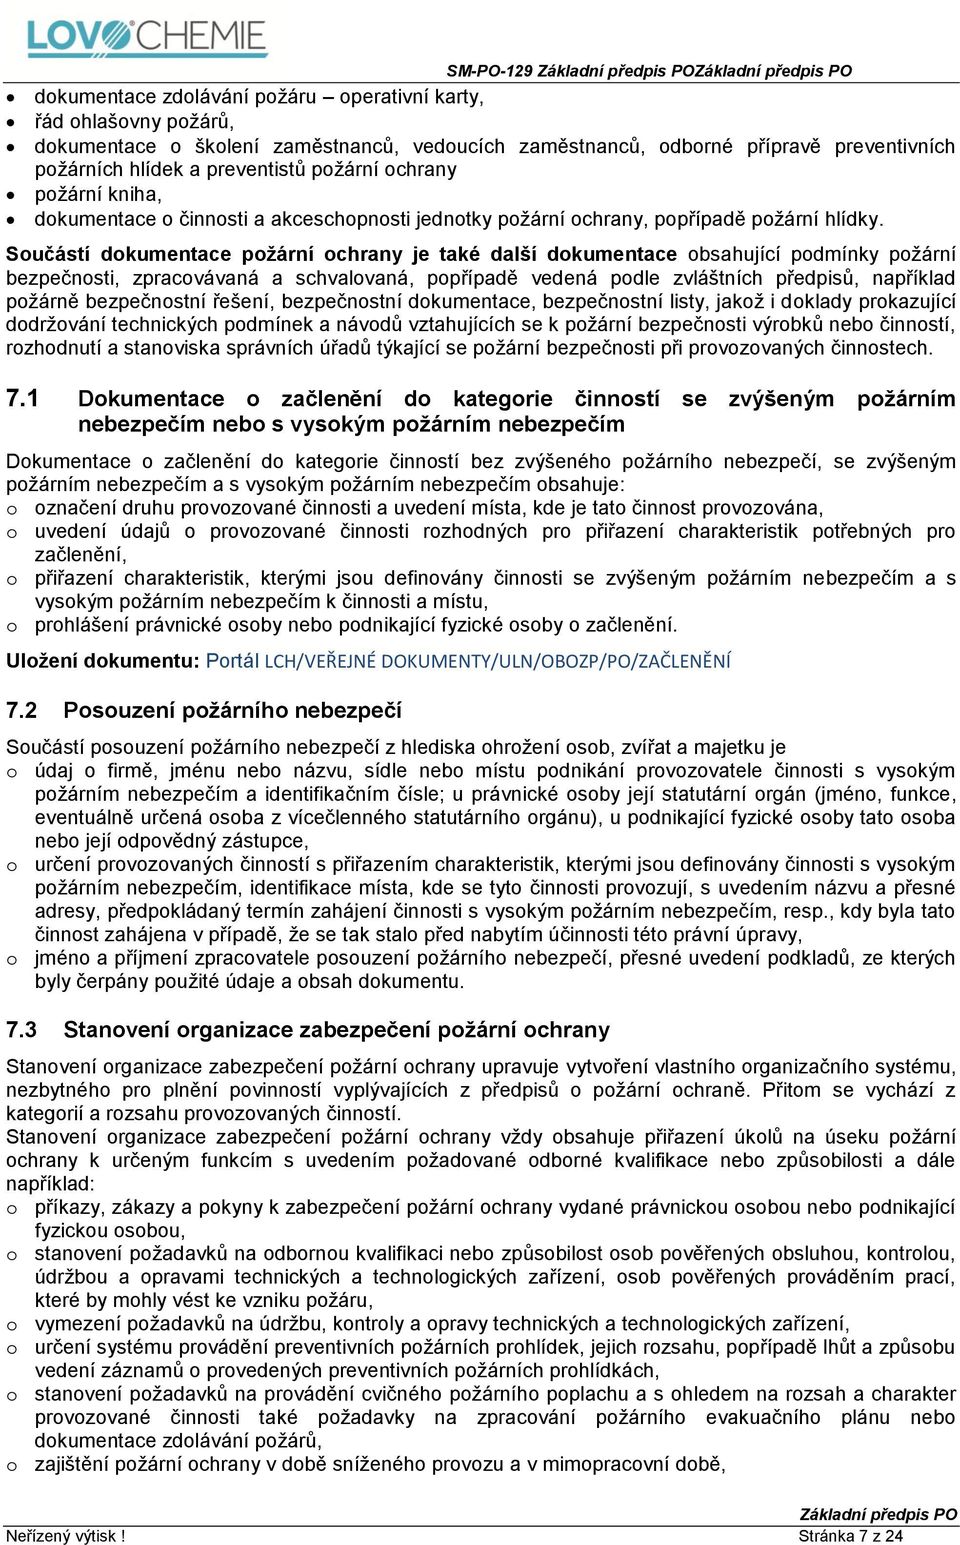 SM (Směrnice) SM-PO-129 Základní předpis PO - PDF Free Download